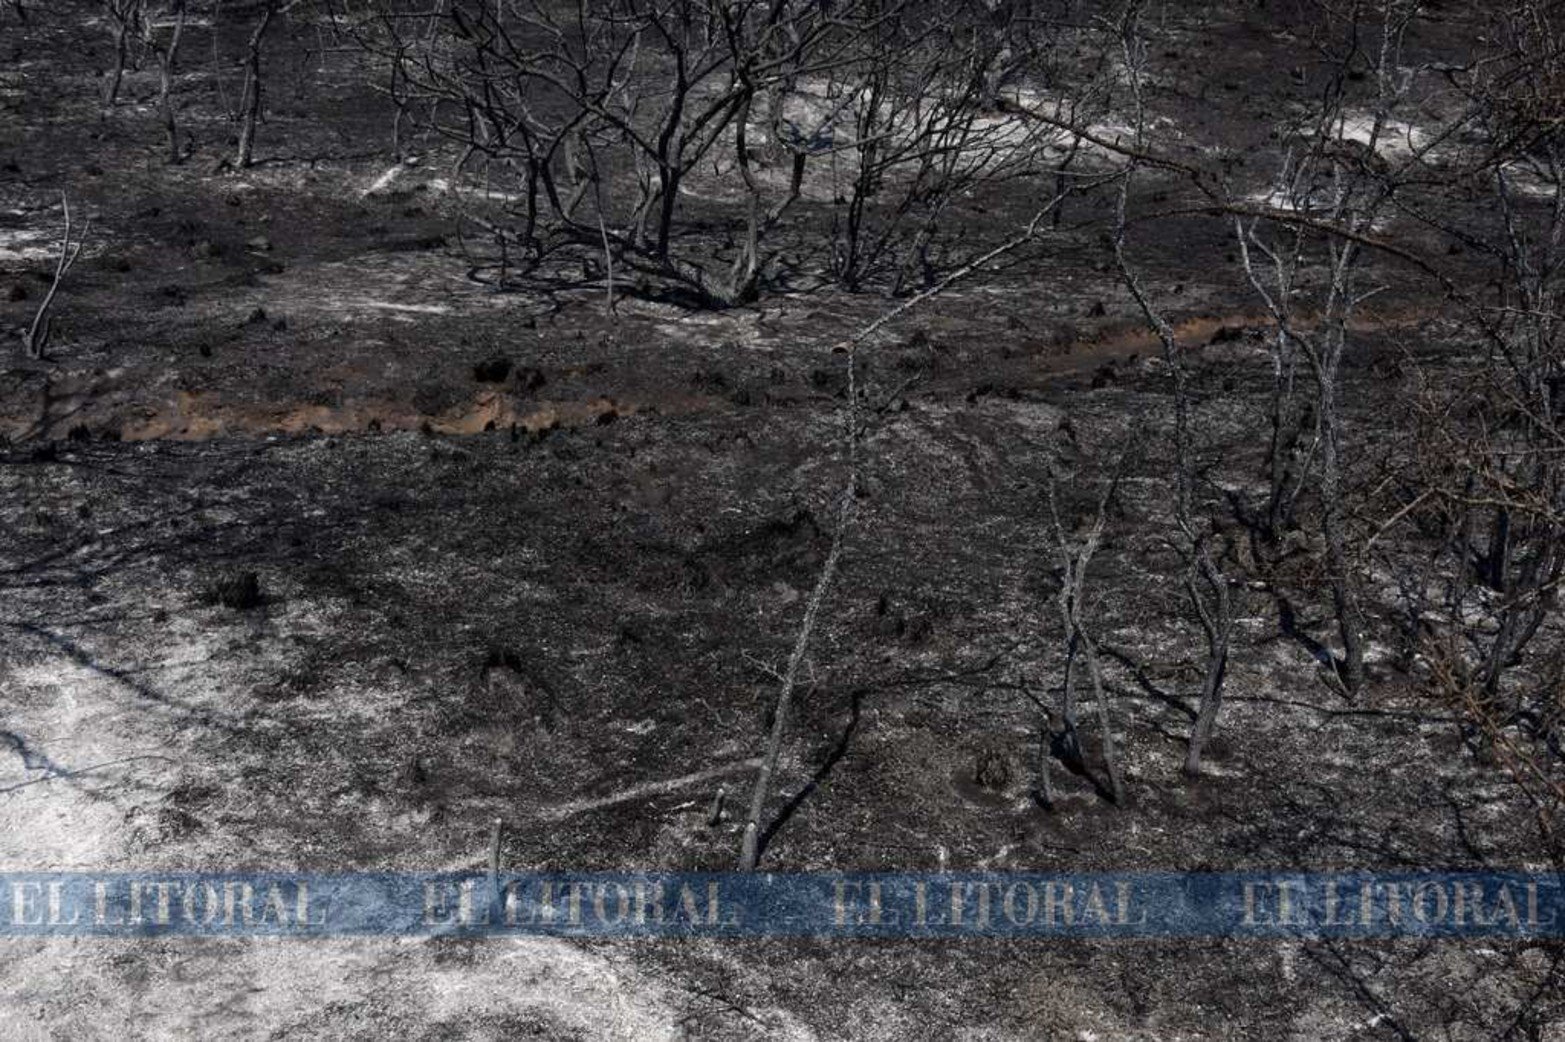 Estiman que el fuego arrasó con mas de 20.000 hectáreas.